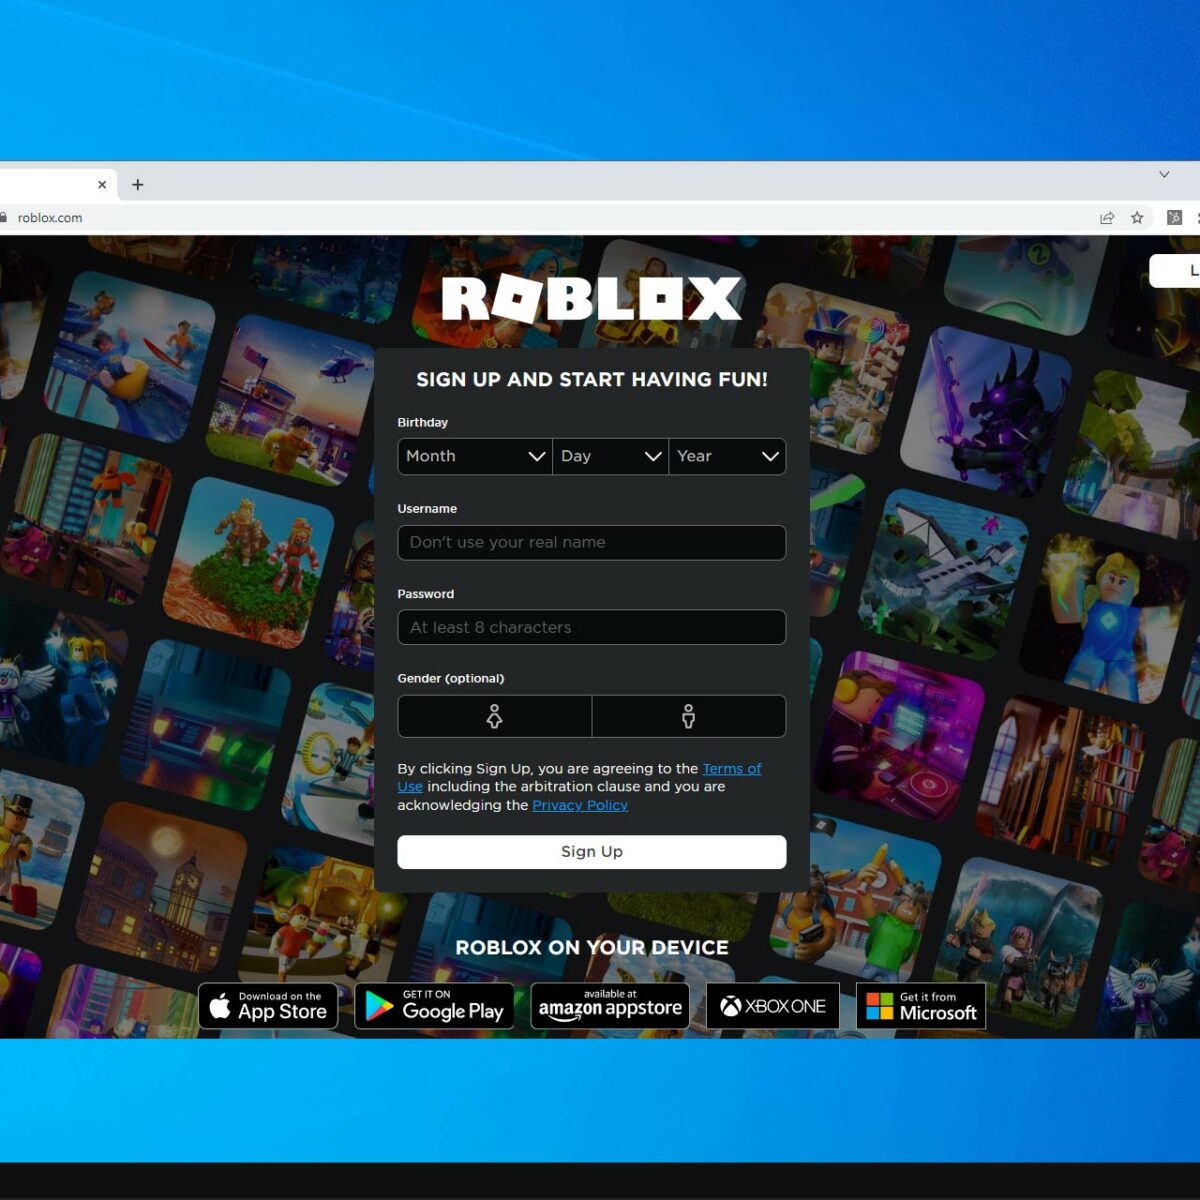 Bạn đang gặp vấn đề khi sử dụng Roblox trên Google Chrome? Đừng lo lắng, chúng tôi sẽ giúp bạn giải quyết vấn đề này. Nhấn vào hình ảnh để khám phá cách sửa lỗi Roblox không hoạt động trên Google Chrome, và bạn sẽ tiếp tục được trải nghiệm những trò chơi thú vị nhất của Roblox.